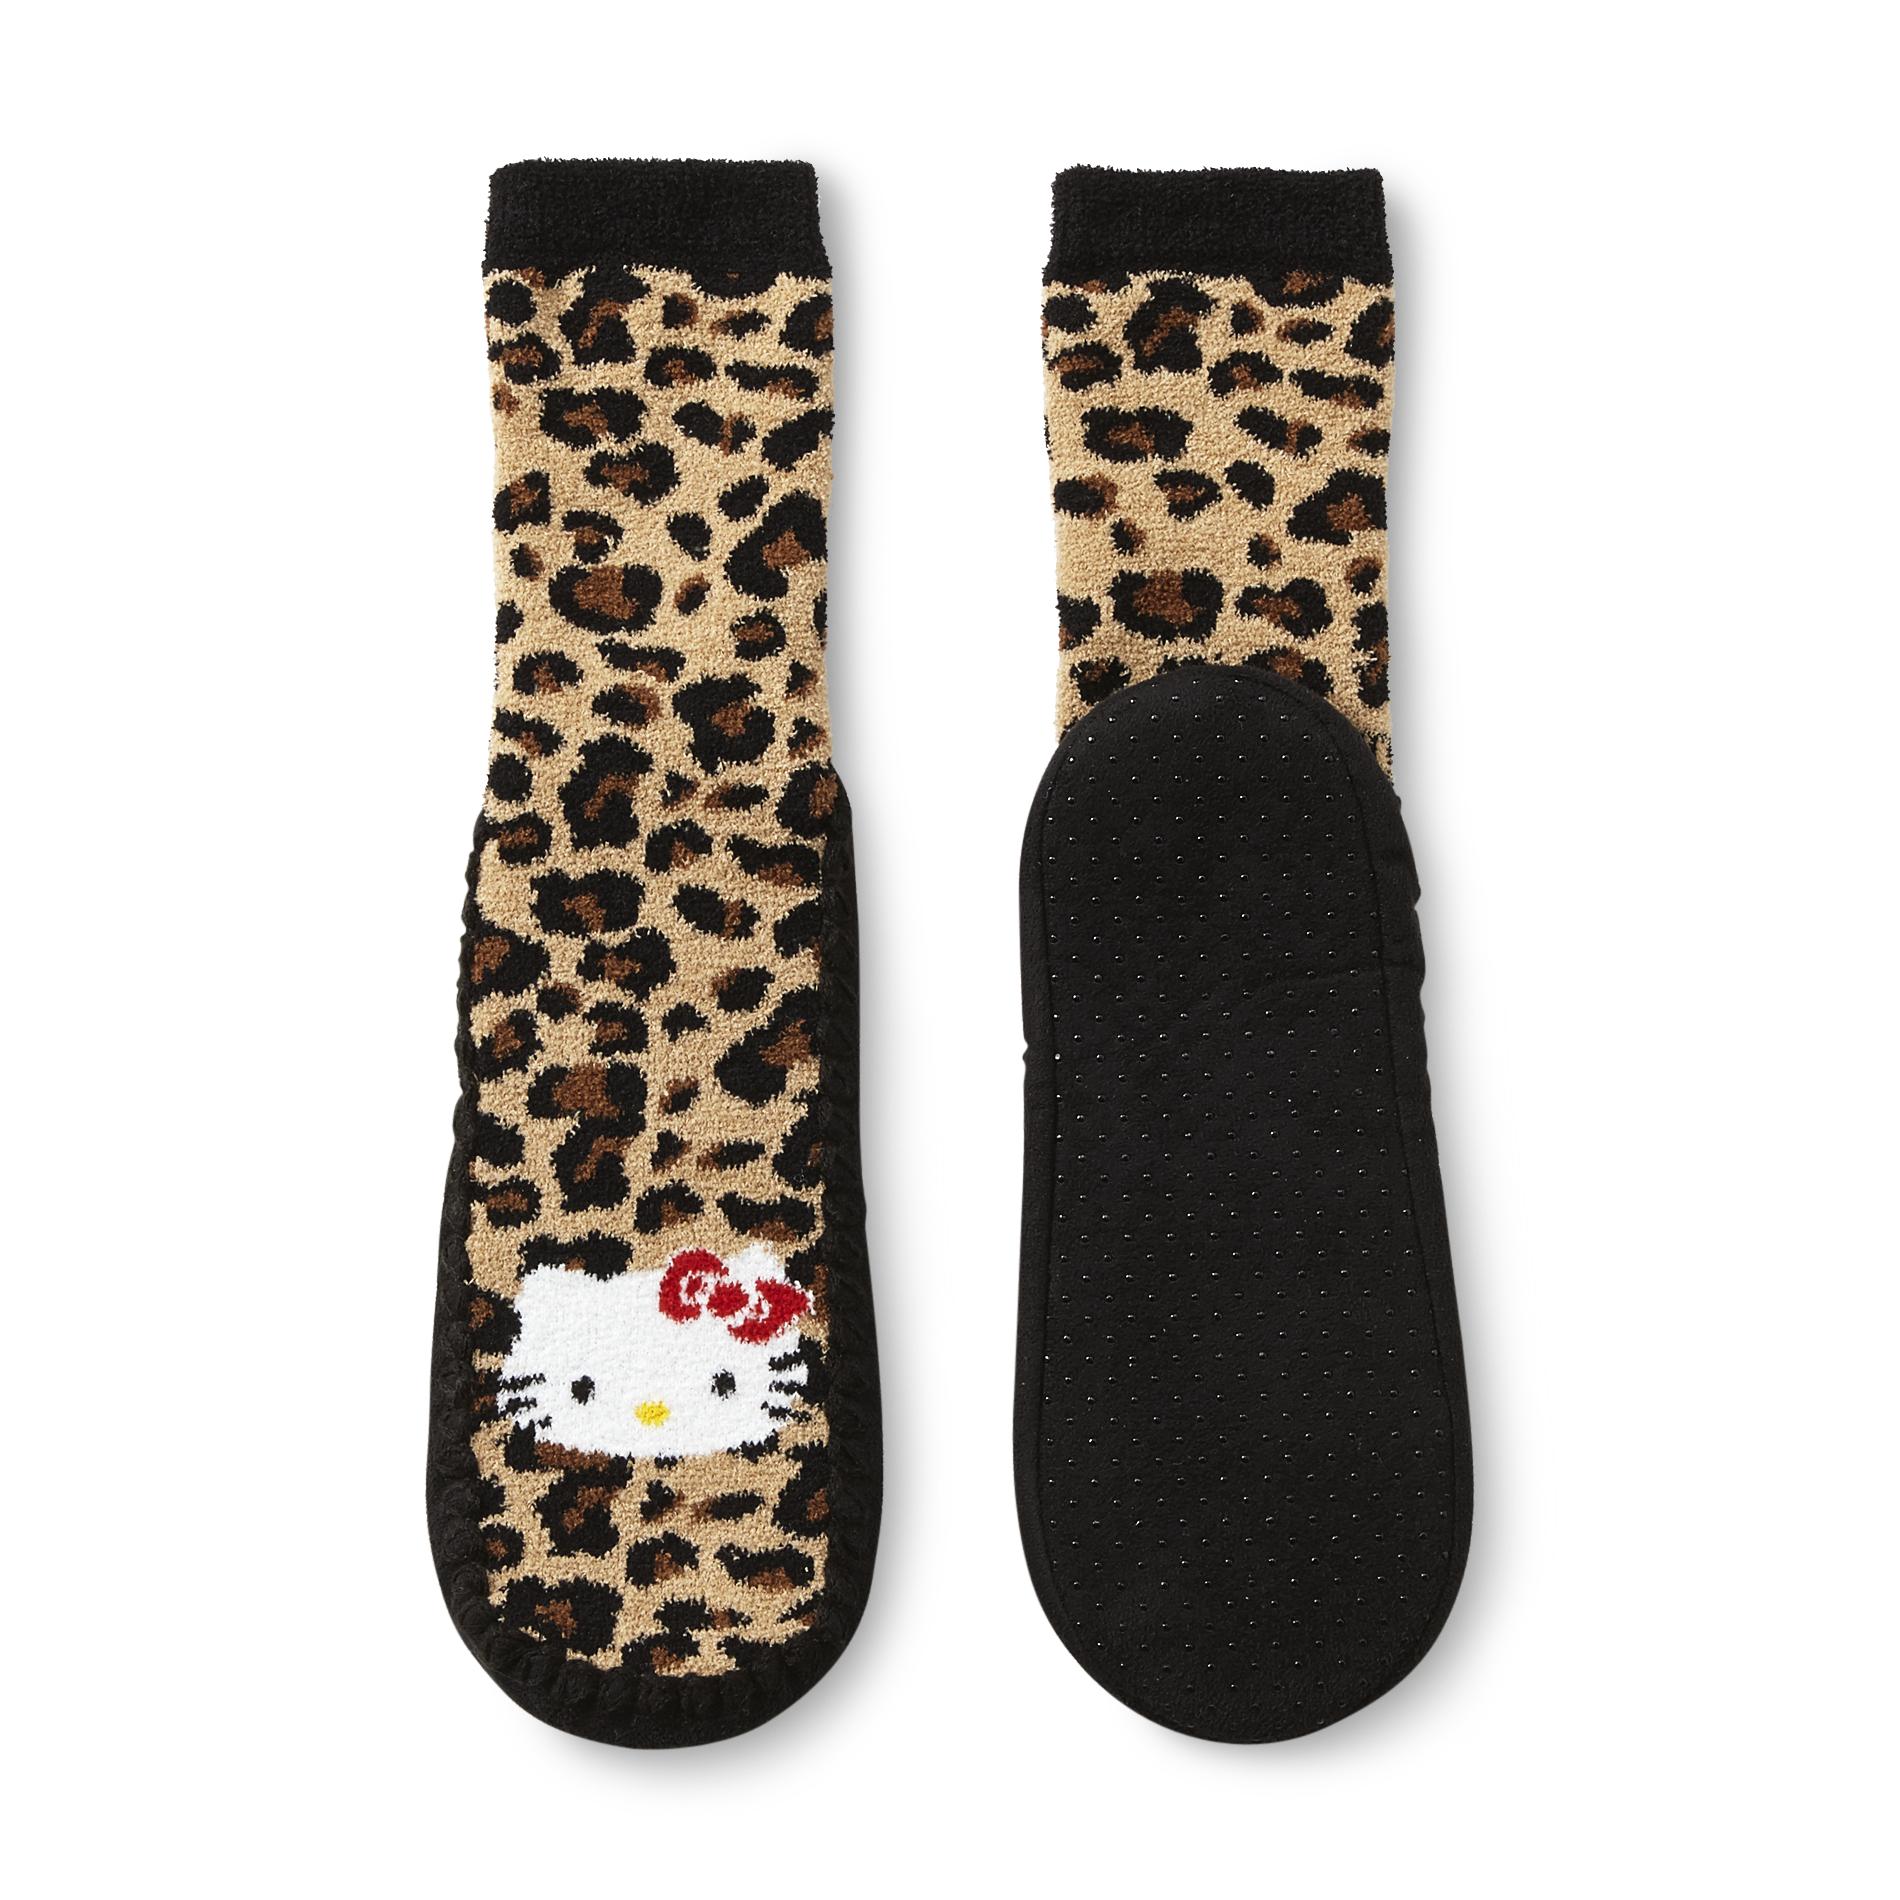 Hello Kitty Girl's Slipper Socks - Leopard Print